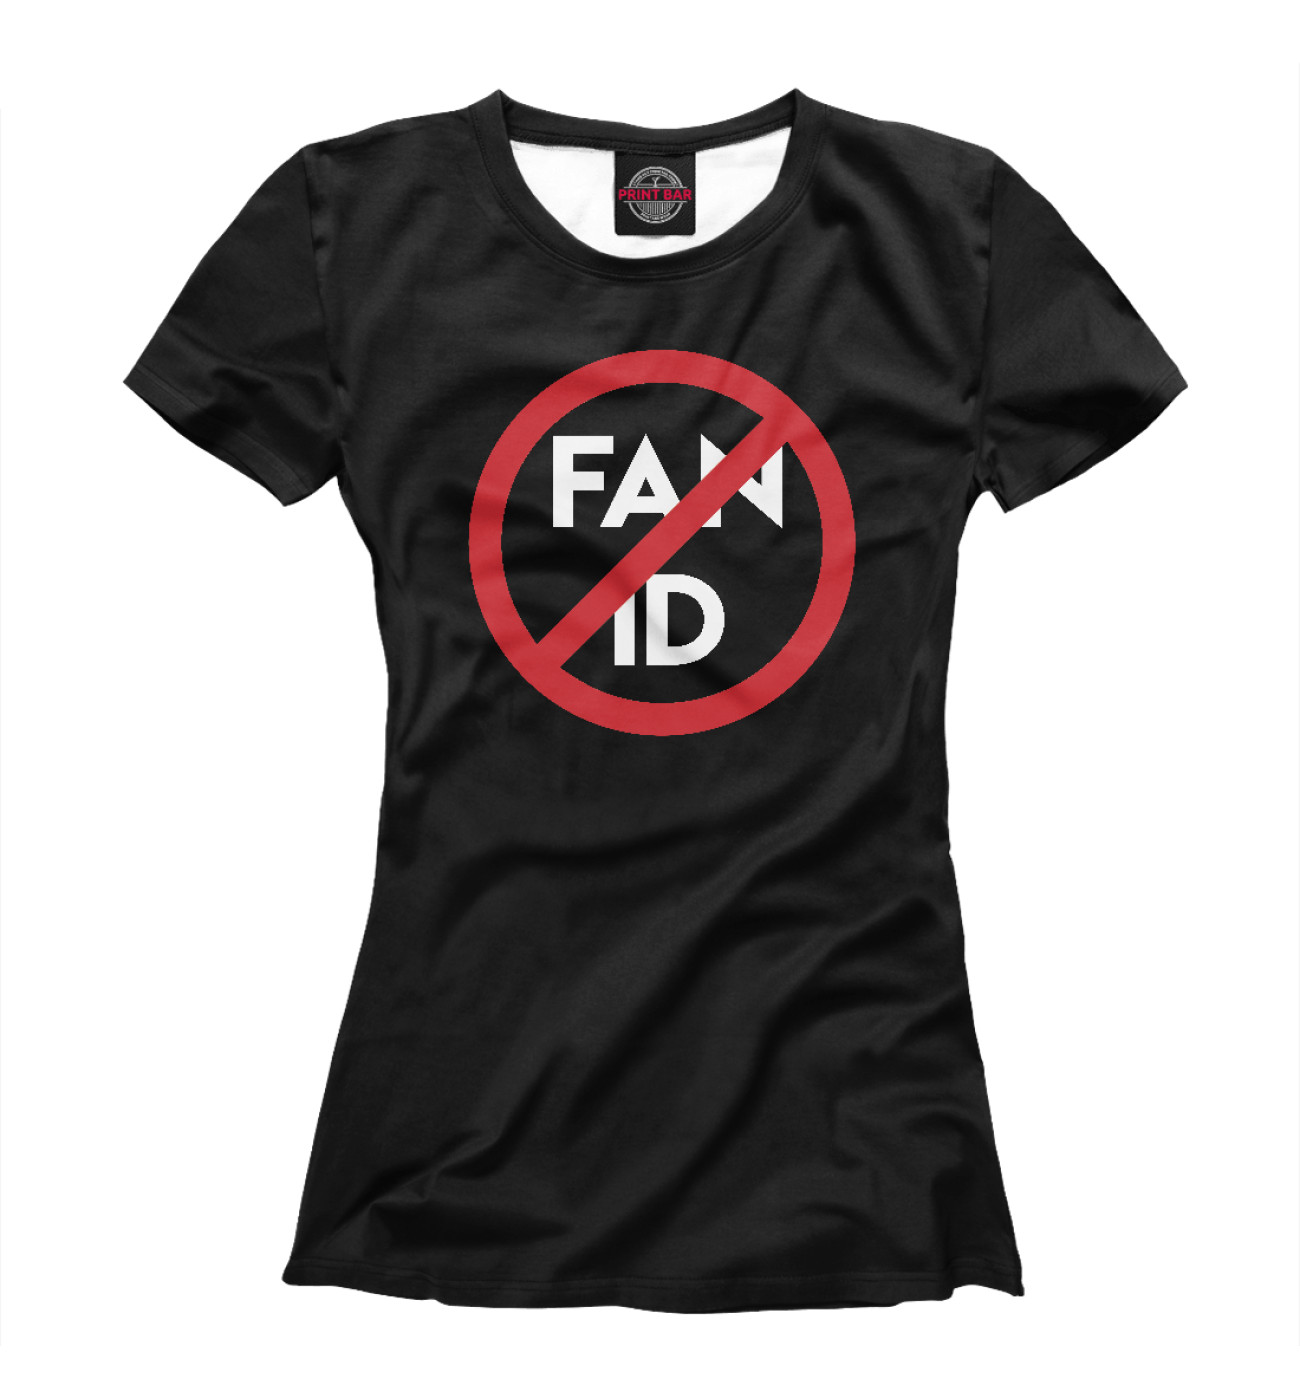 Женская Футболка Fan ID, артикул: FTO-288372-fut-1